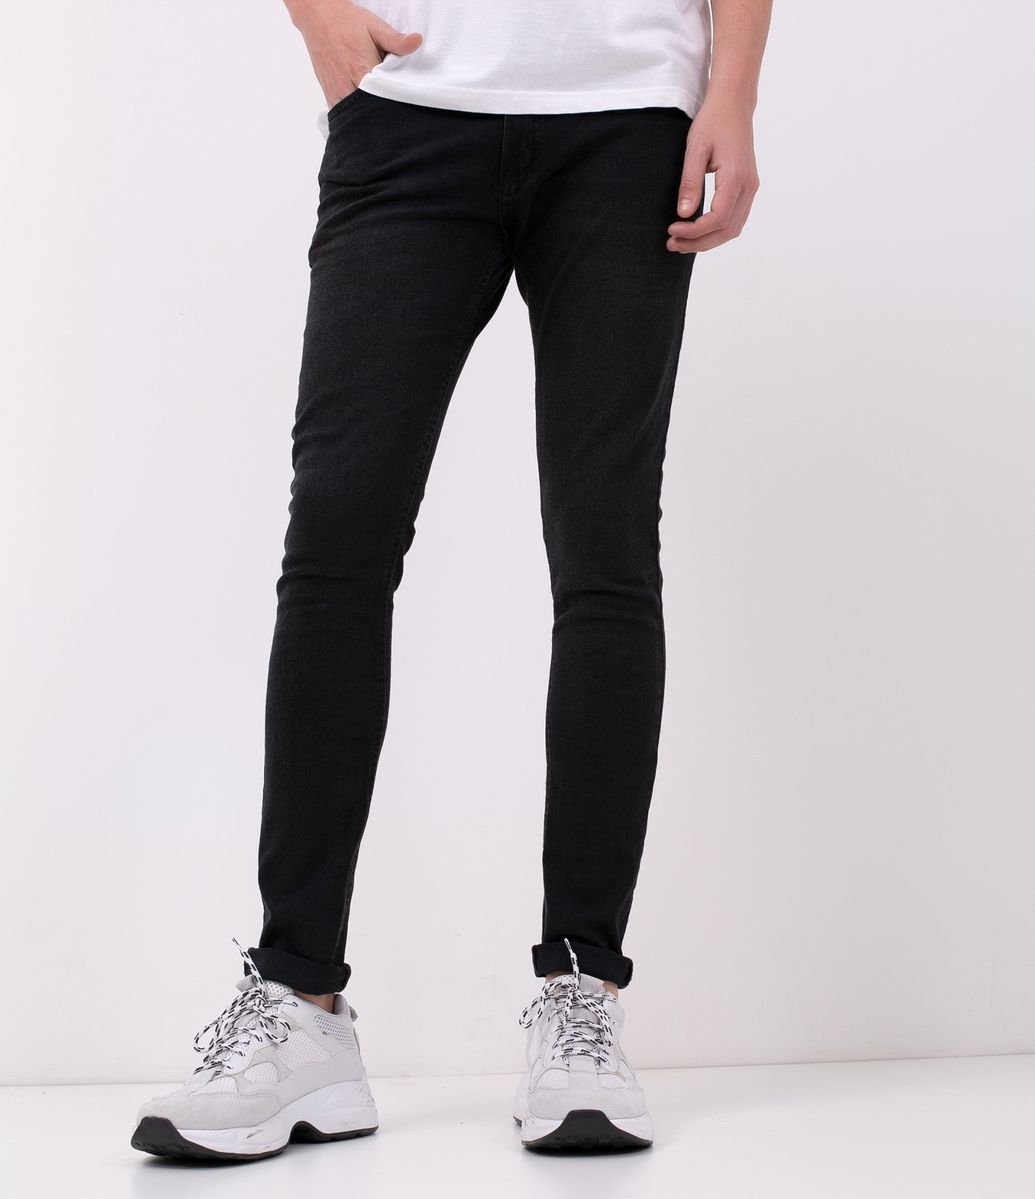 calça jeans preta masculina renner